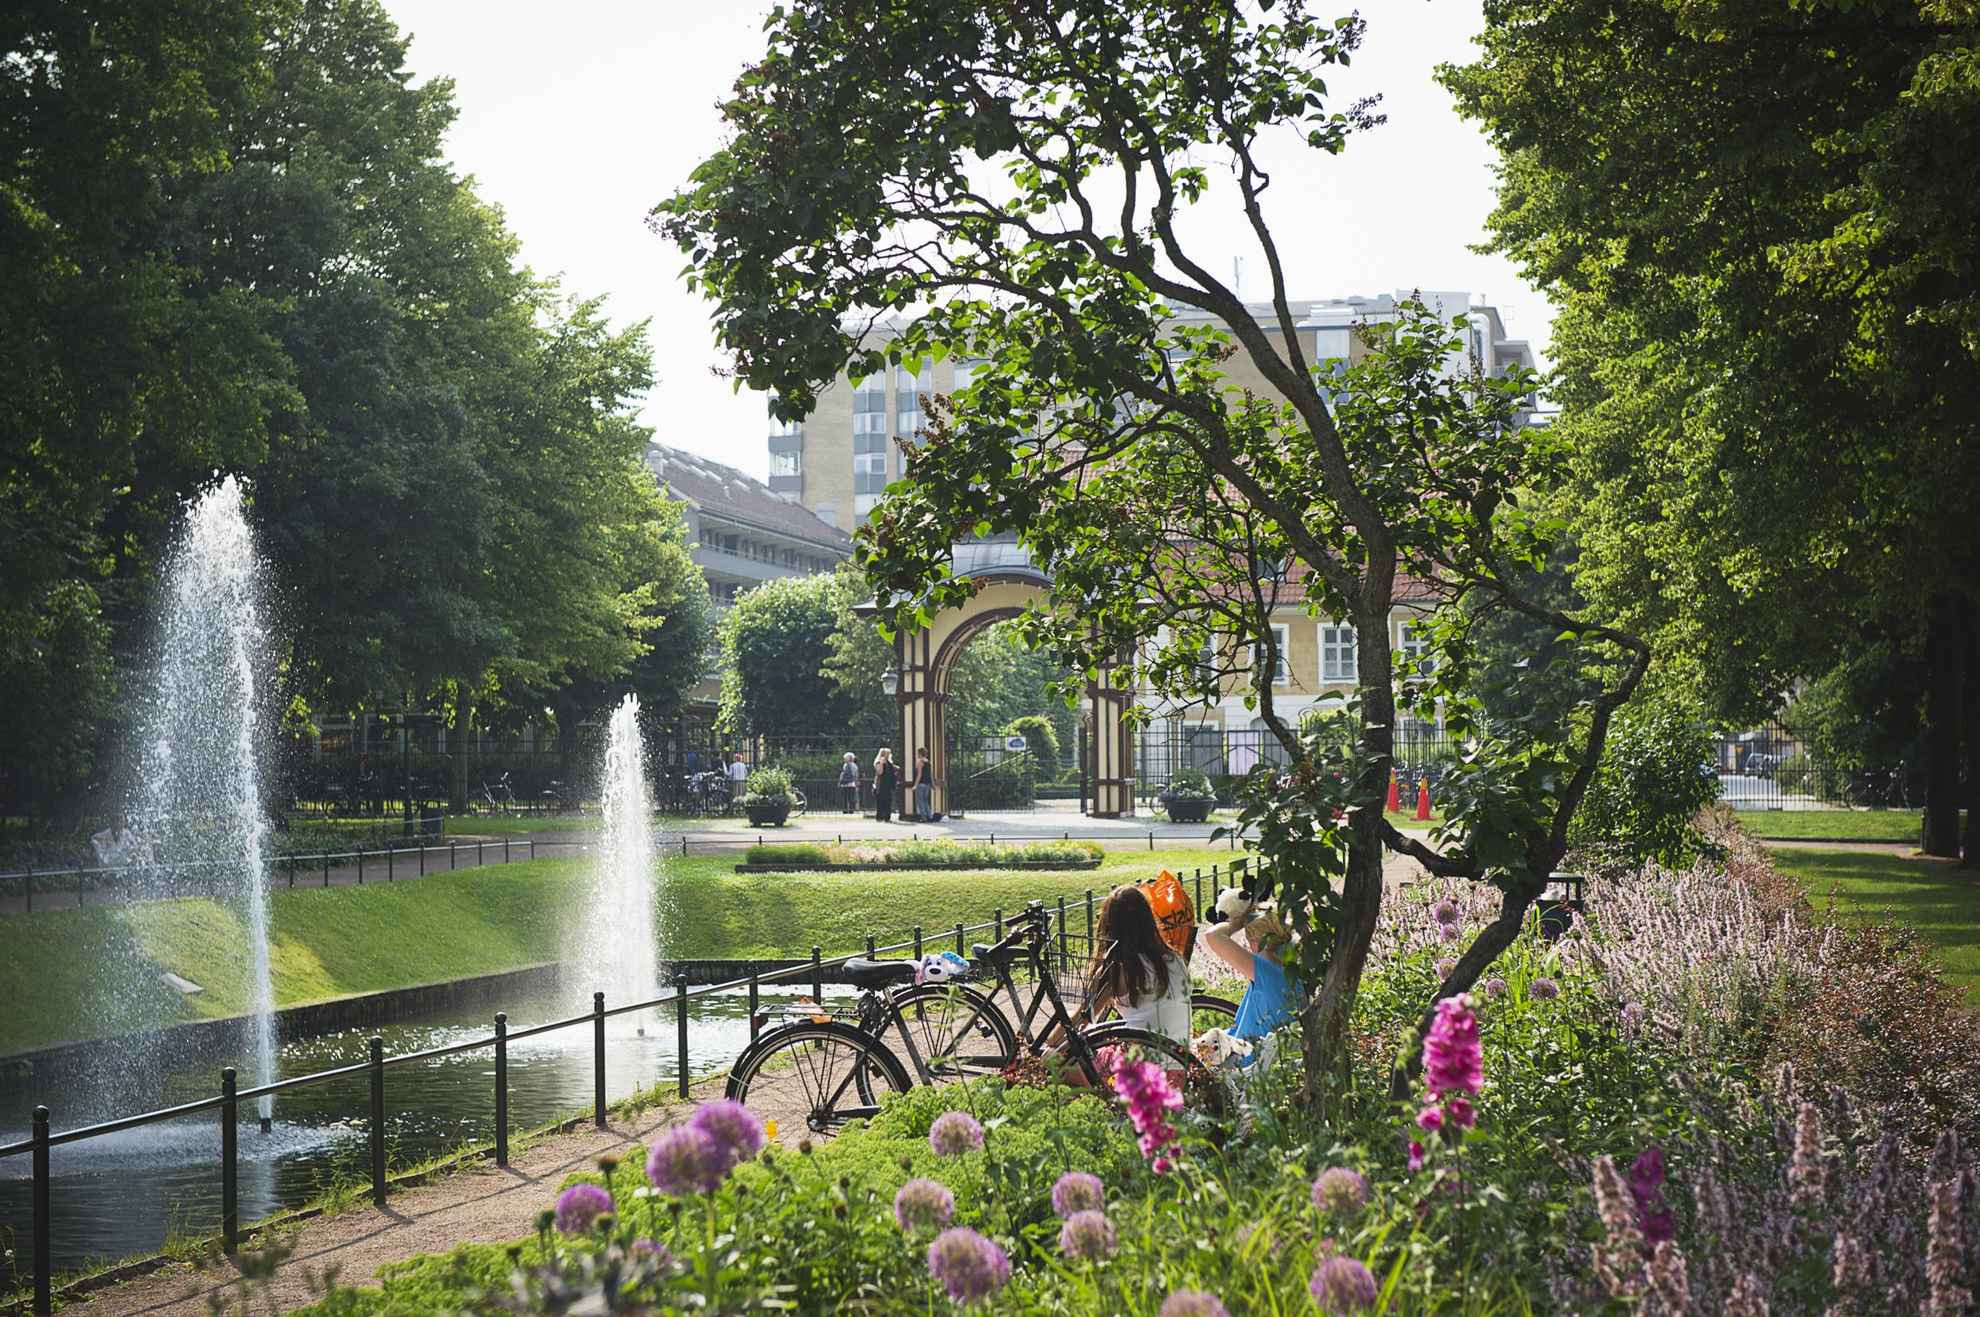 Le parc est rempli de fleurs et de verdure. On aperçoit le dos de deux femmes assises à côté d'un plan d'eau avec deux fontaines. L'entrée du parc se trouve en arrière-plan et on distingue des bâtiments derrière le parc.